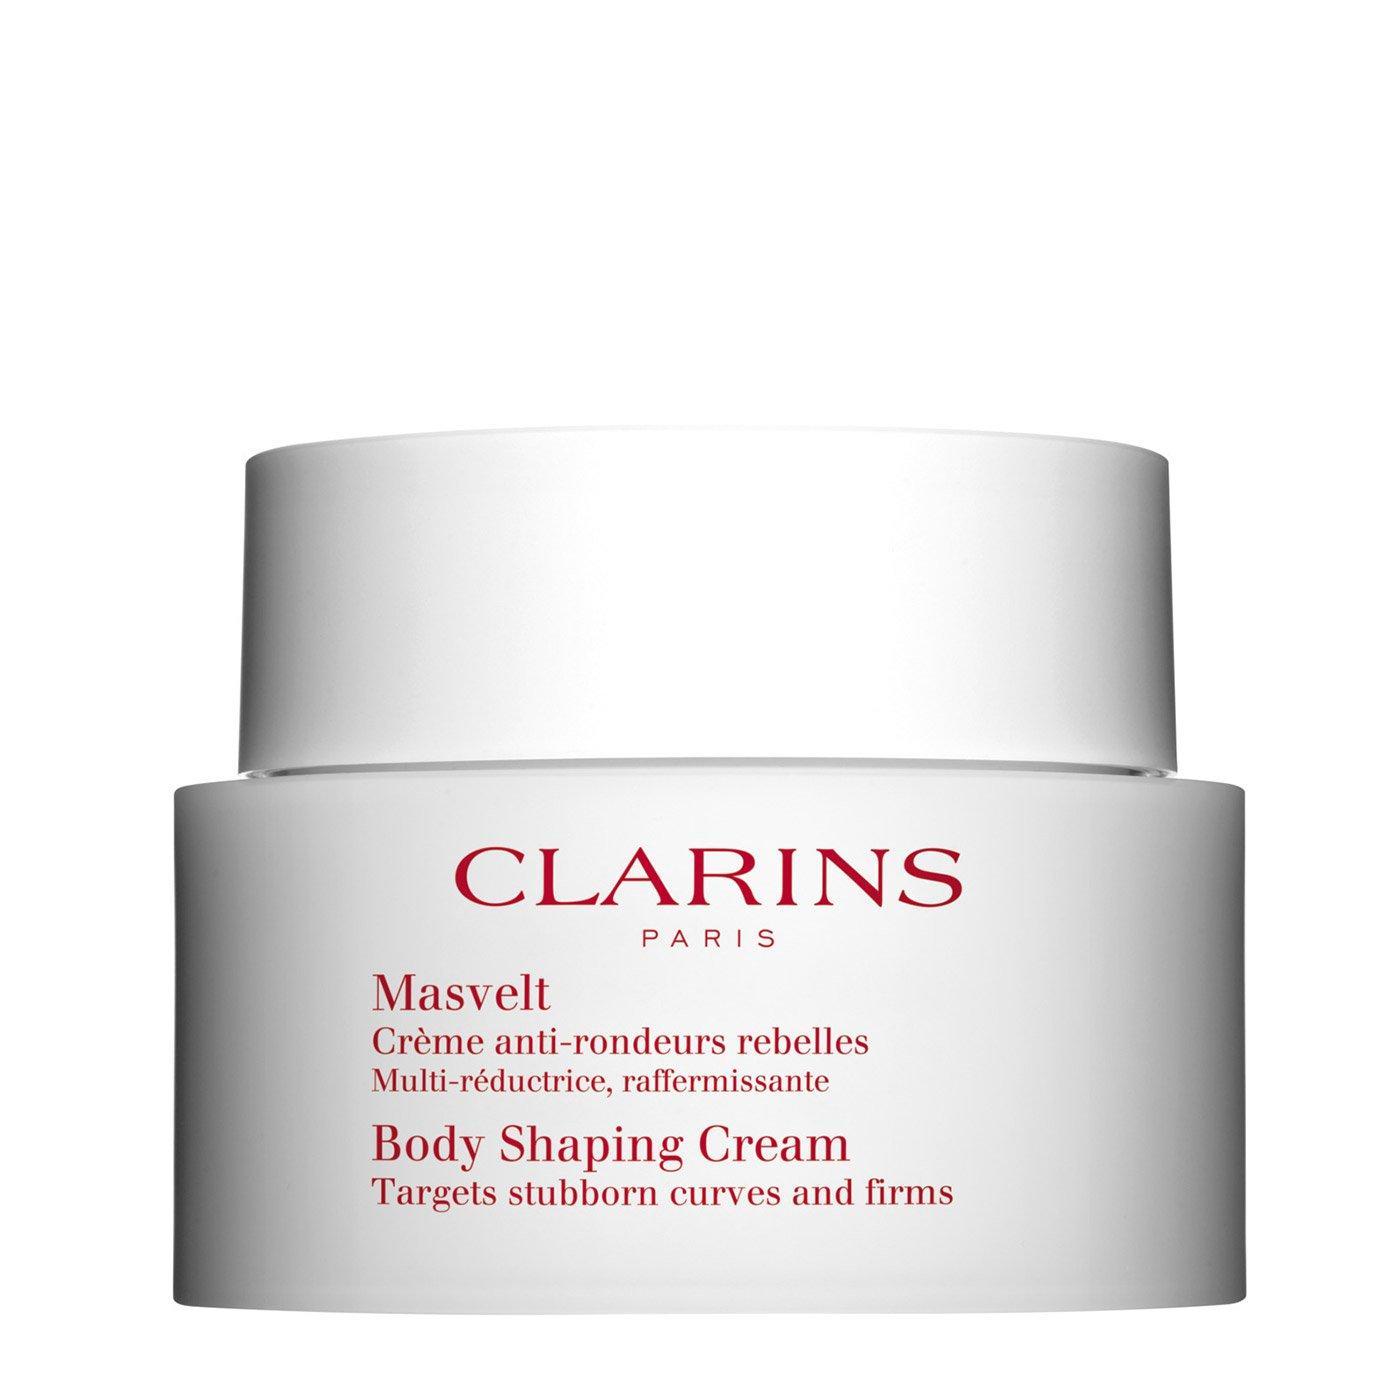 Clarins Masvelt Body Shaping Cream оформящ крем за тяло без опаковка